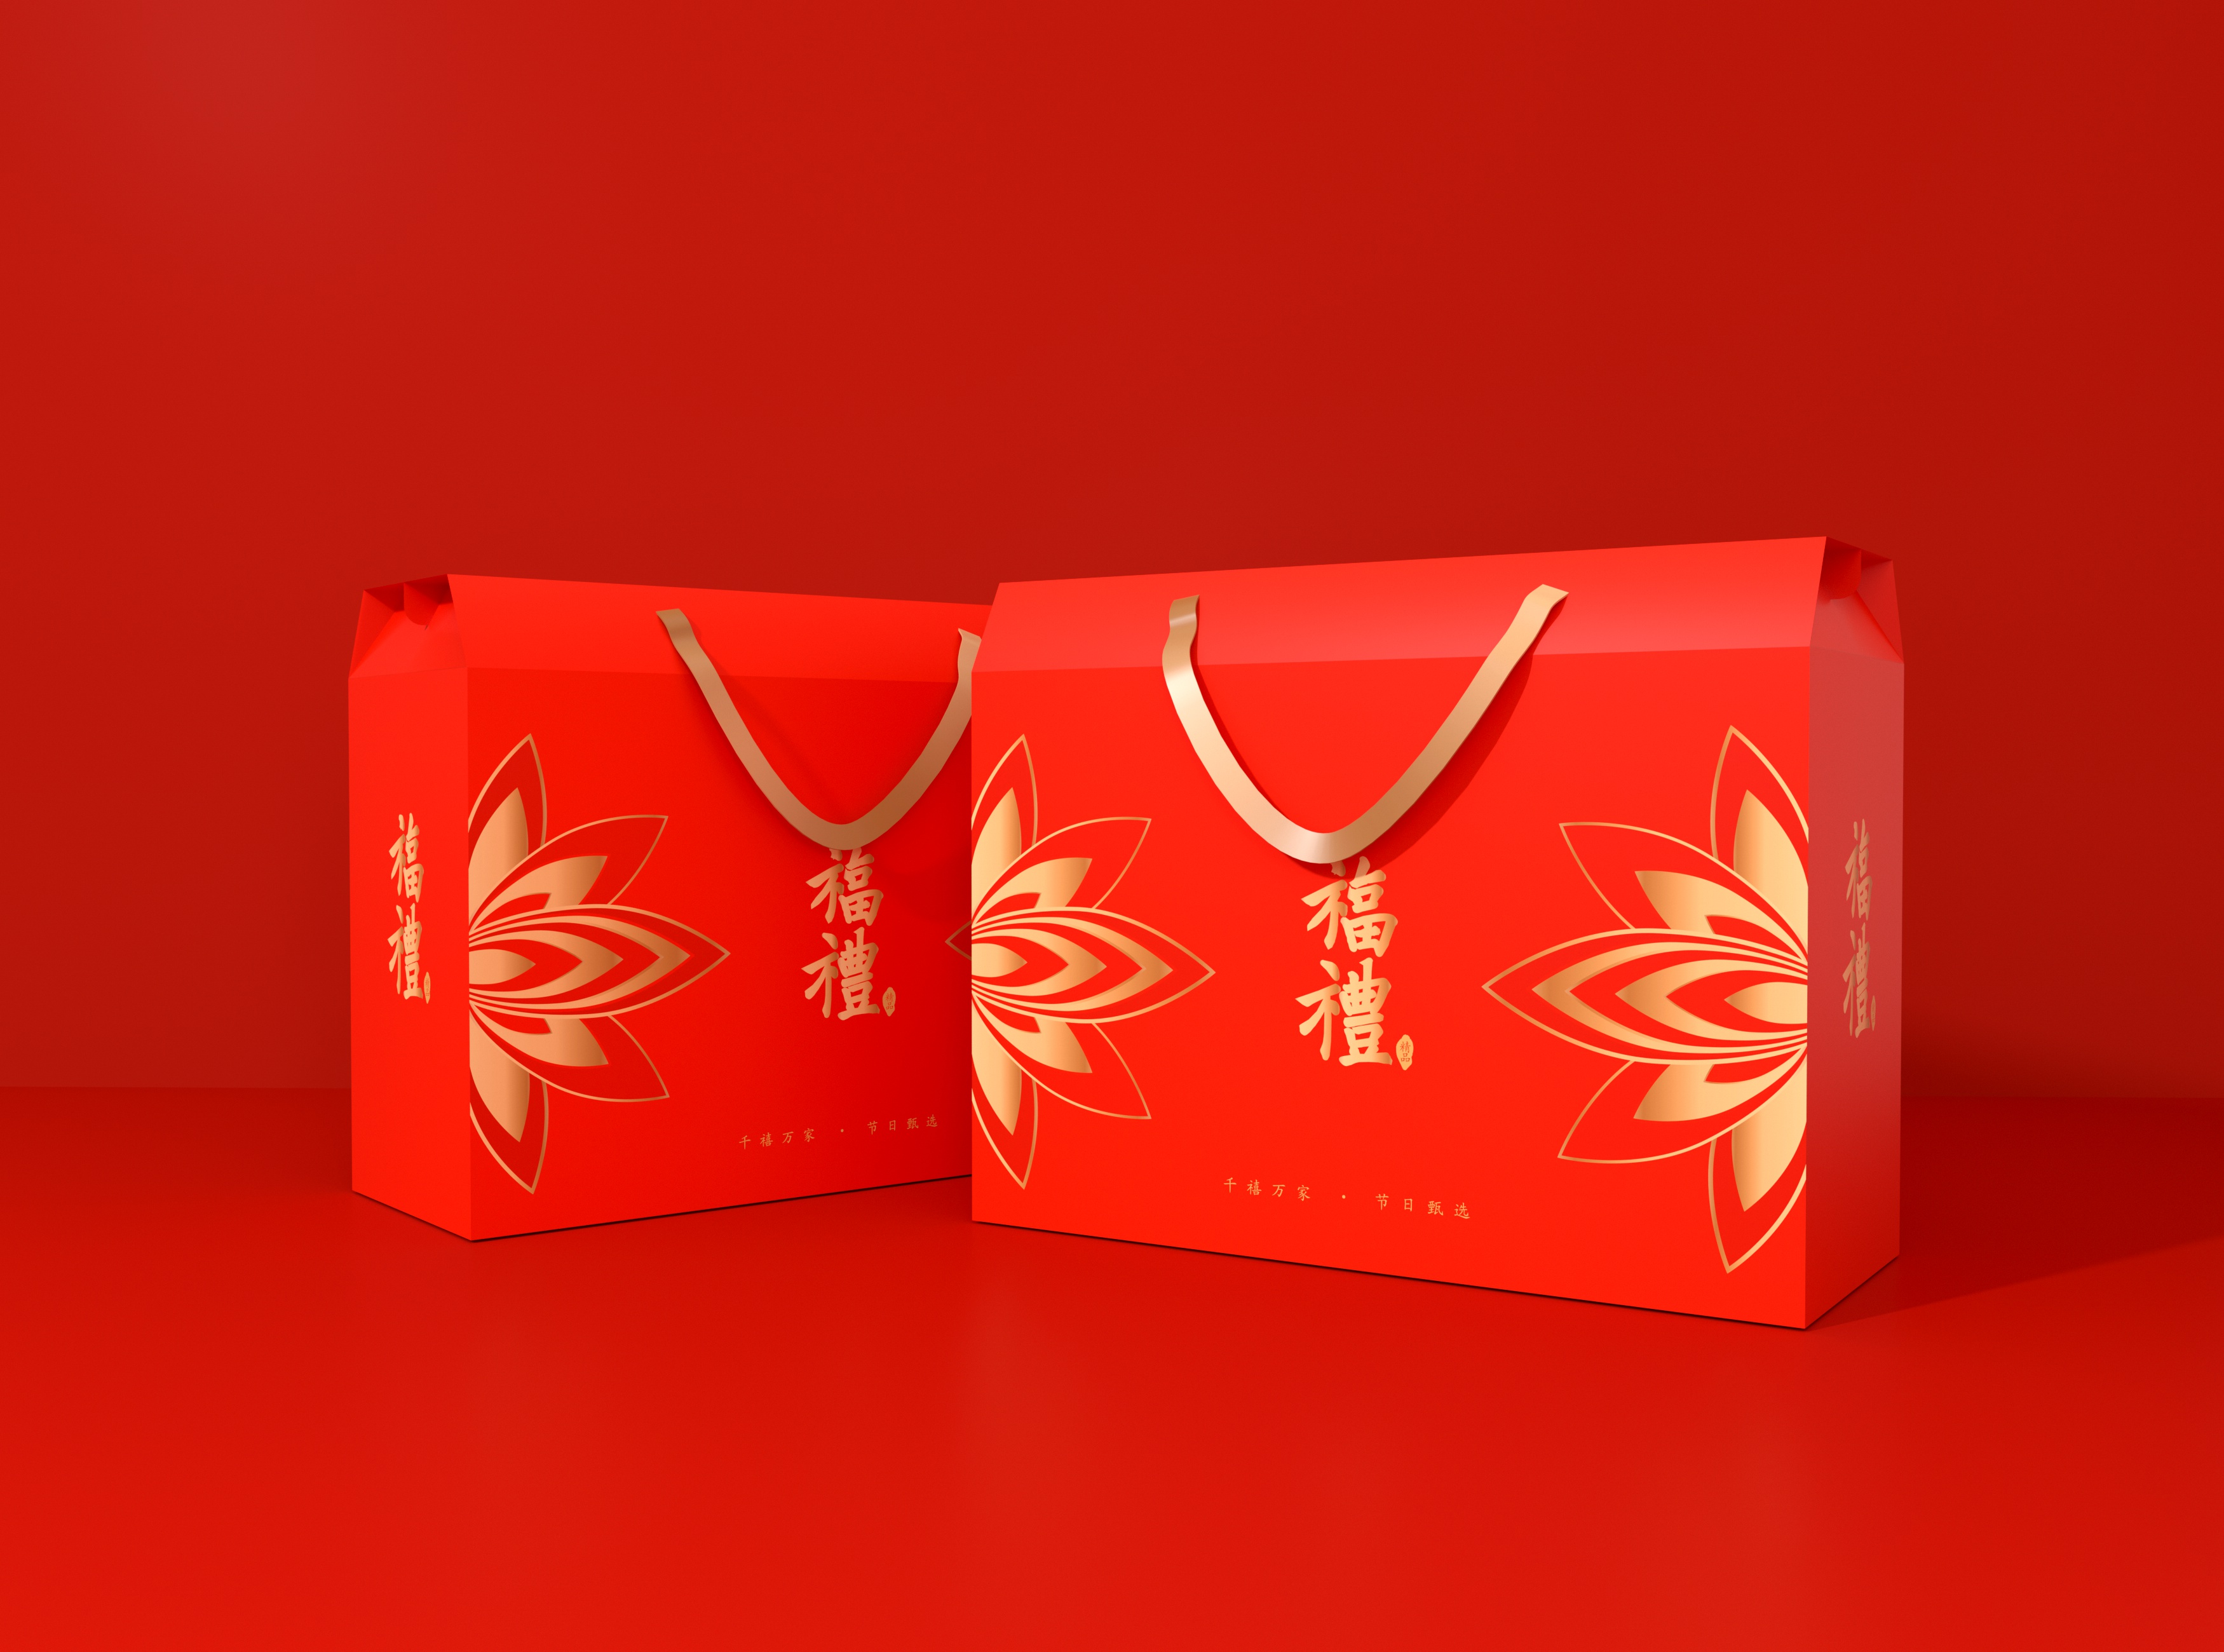 高端大气喜庆新年节日通用礼盒,食品礼盒,水果礼盒